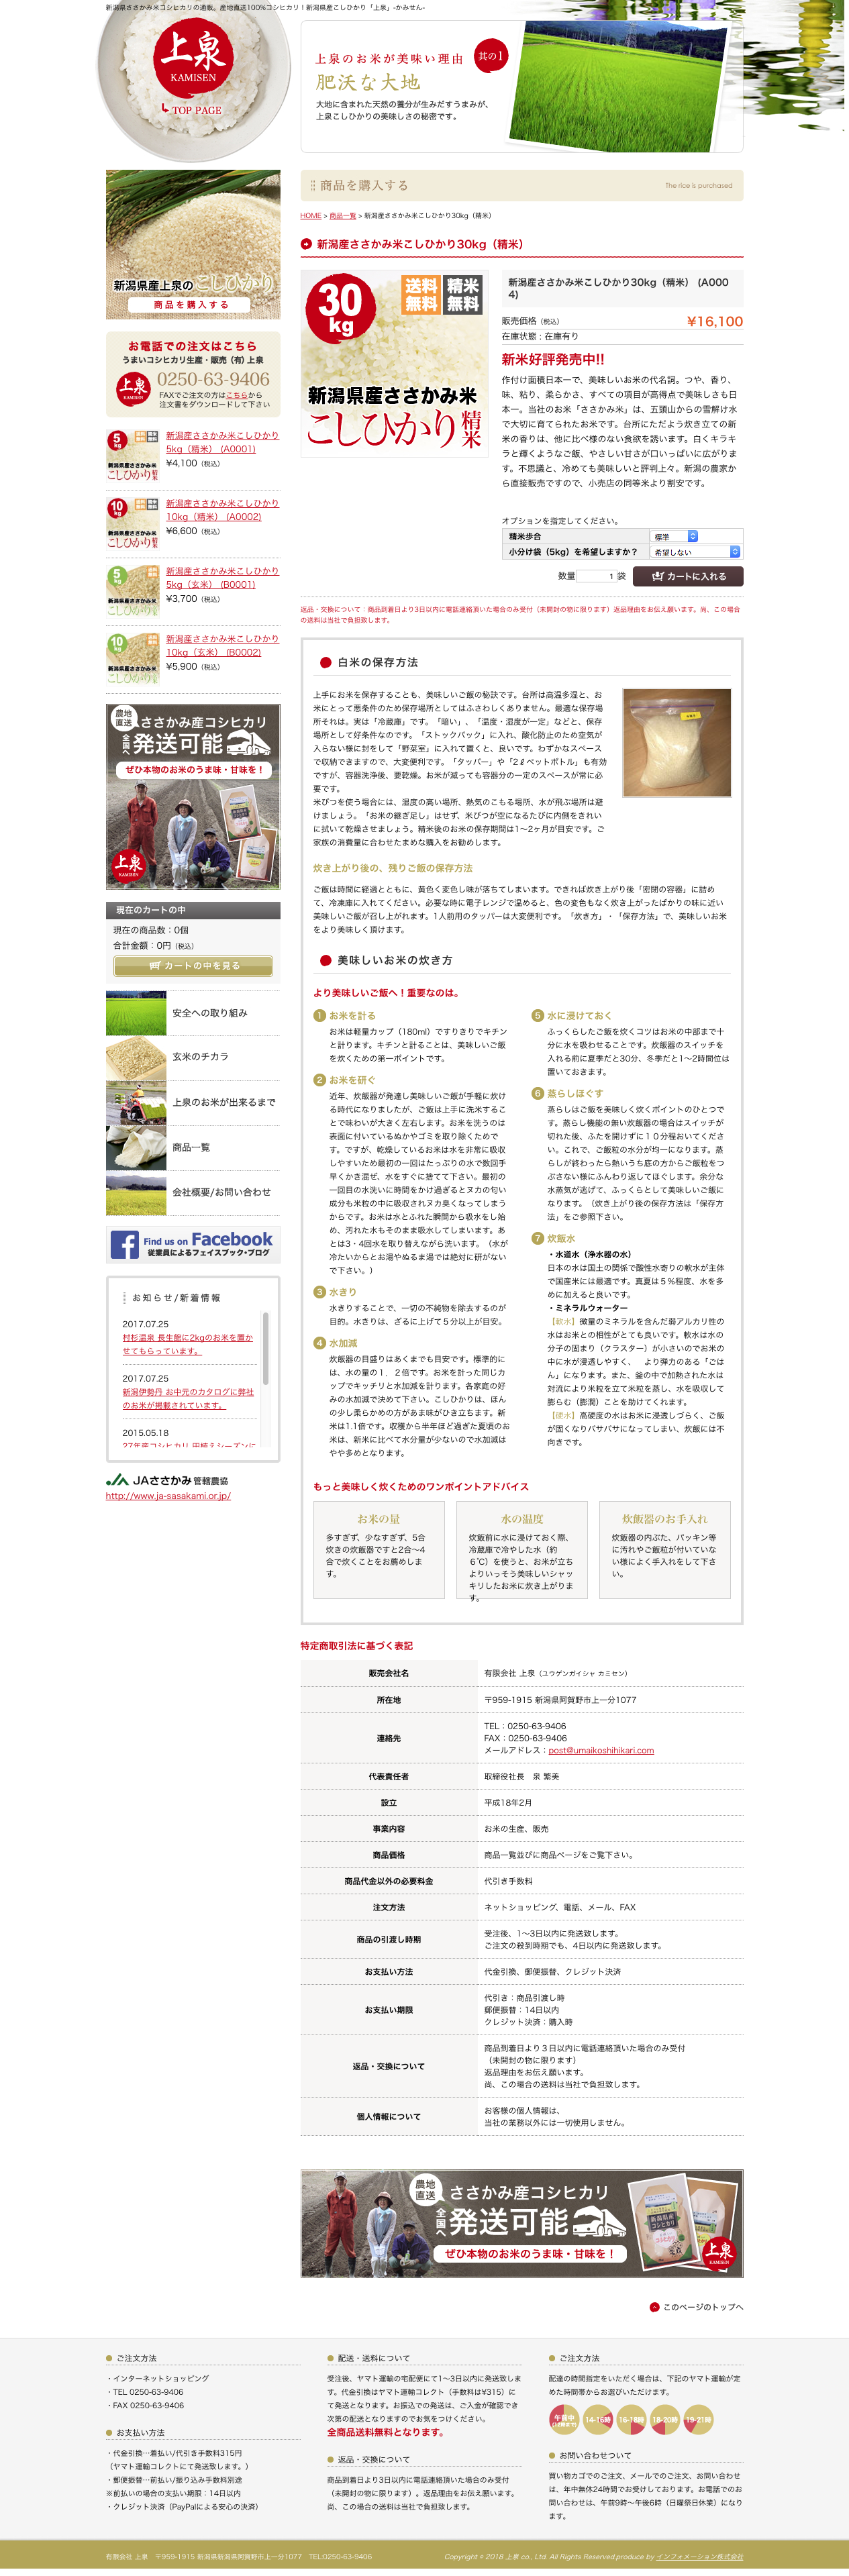 うまいコシヒカリ生産・販売(有)上泉 様のホームページ